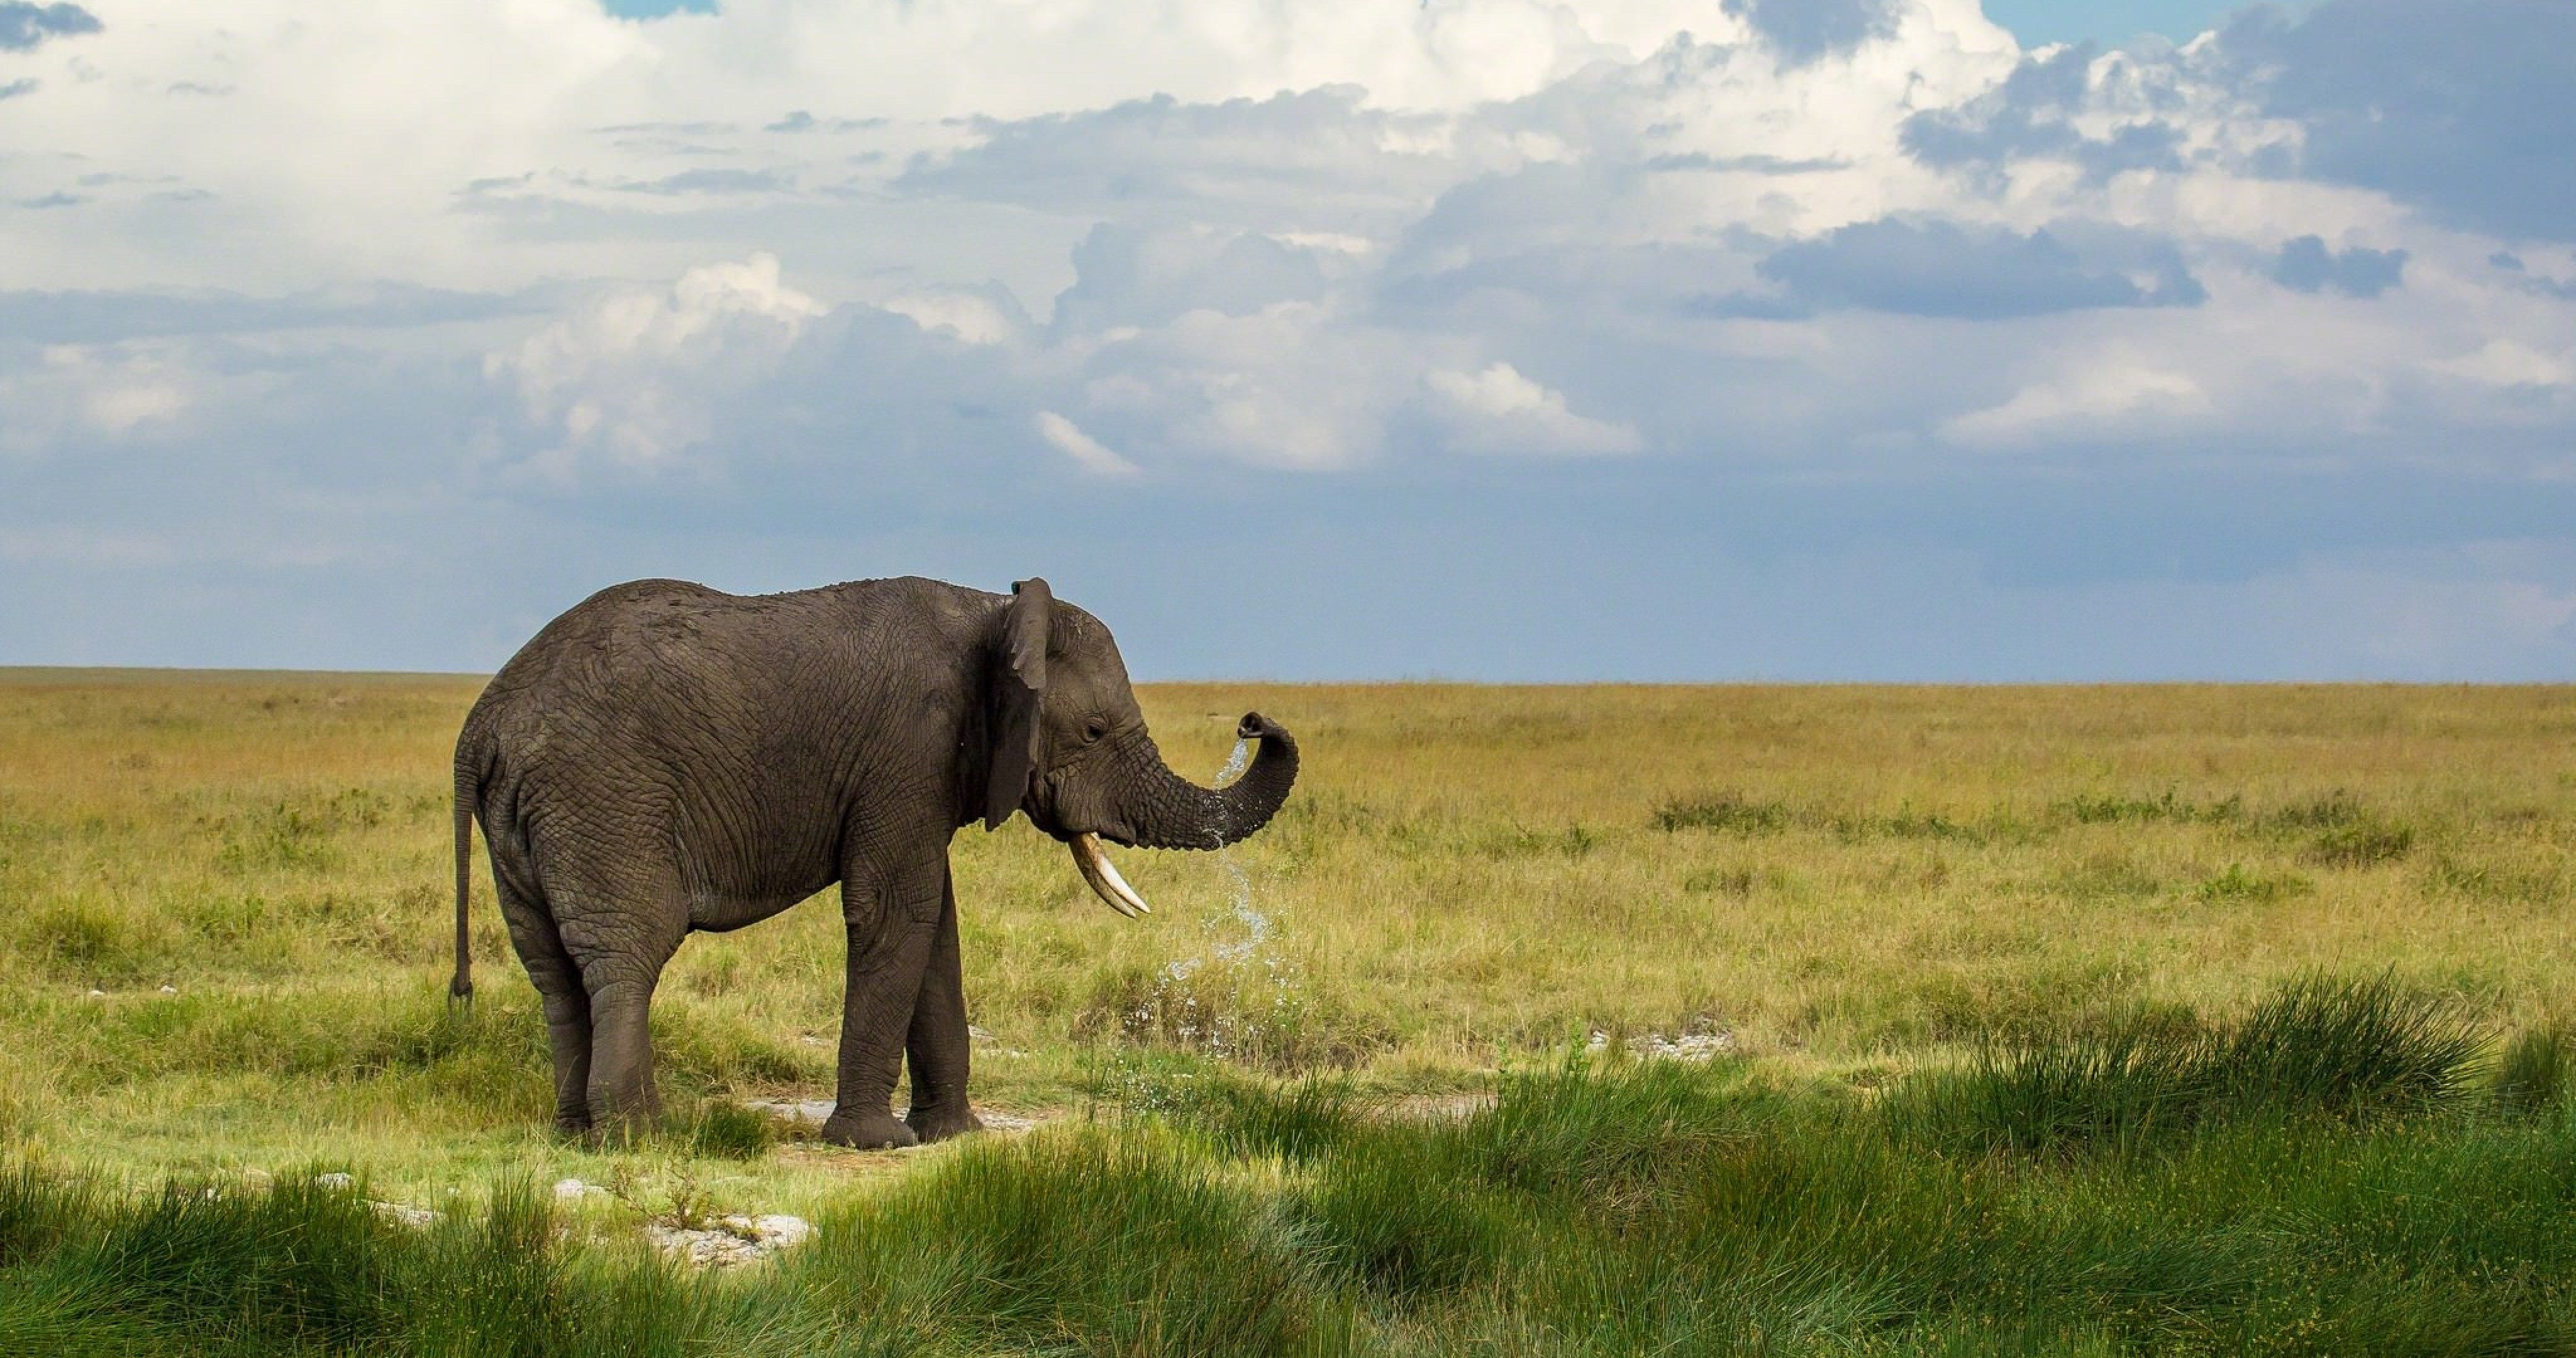 elephant water sprays 4k ultra HD wallpaper. Elephant wallpaper, Elephant, Small elephant